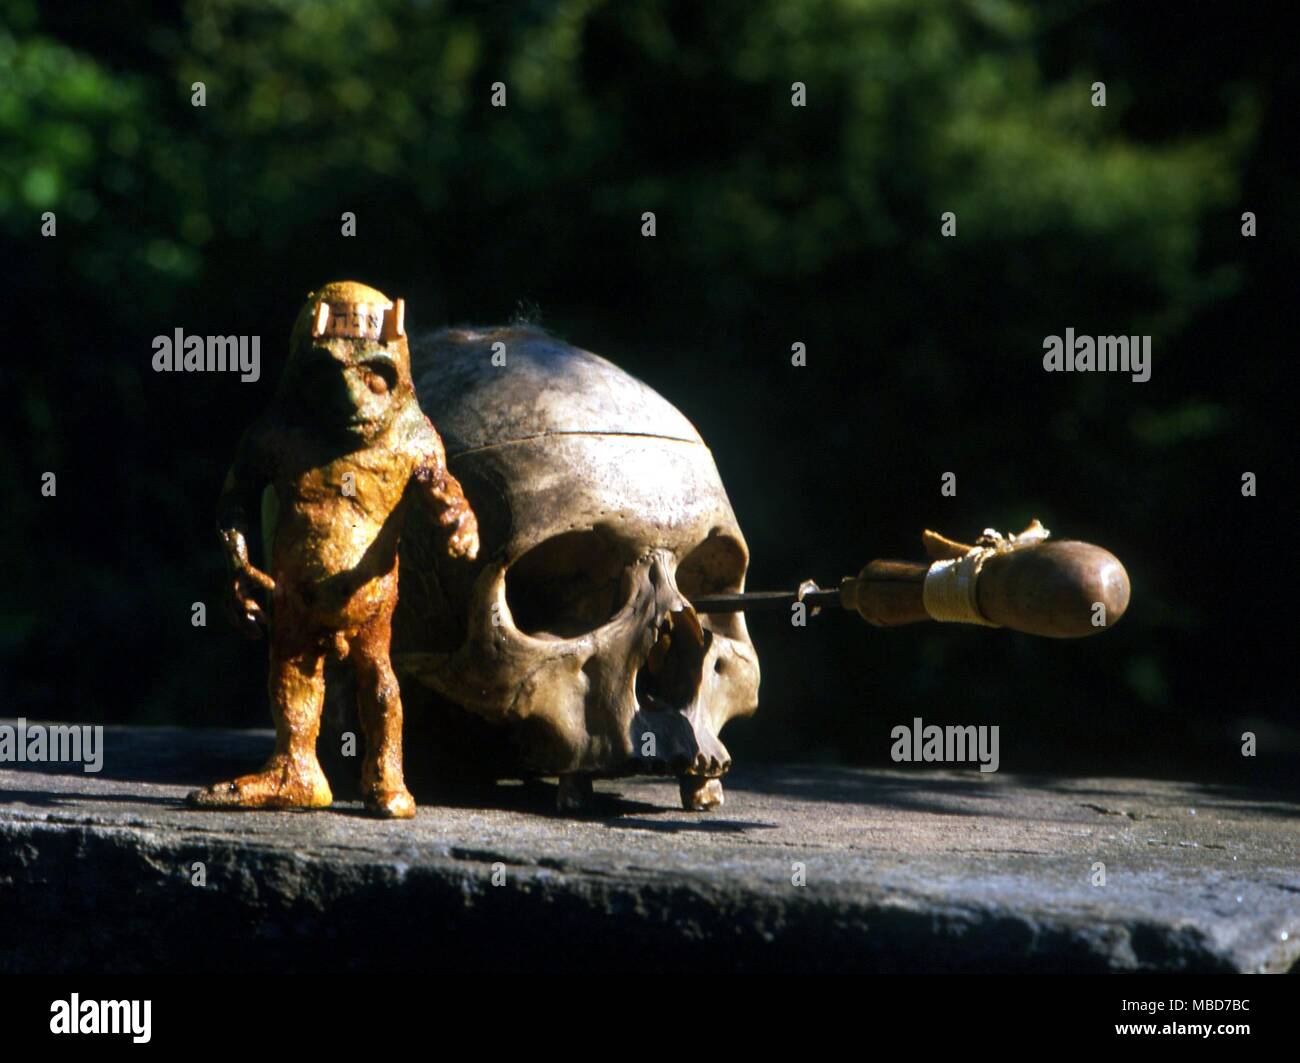 Crâne avec le monstre appelé fabriqué le Golem, une sorte de prototype de la créature de Frankenstein. Banque D'Images